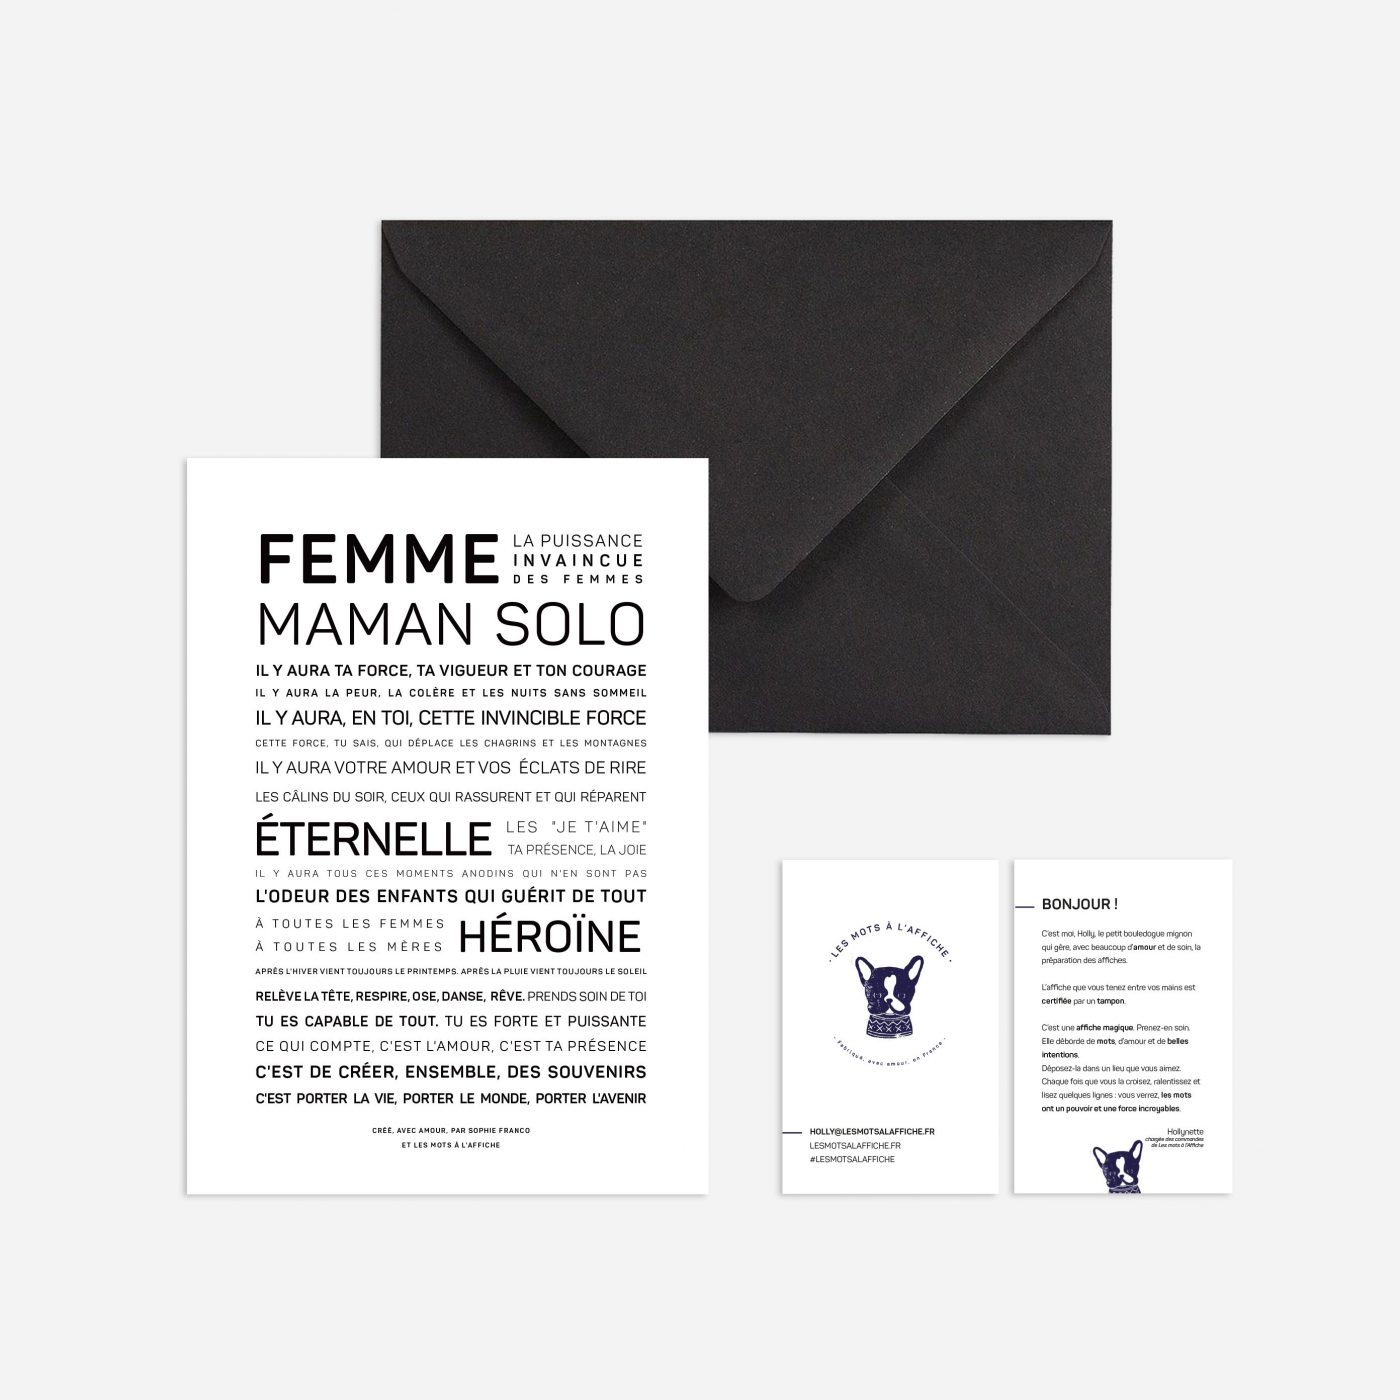 Affiche Femme, maman solo - Sophie Franco - poster avec du texte